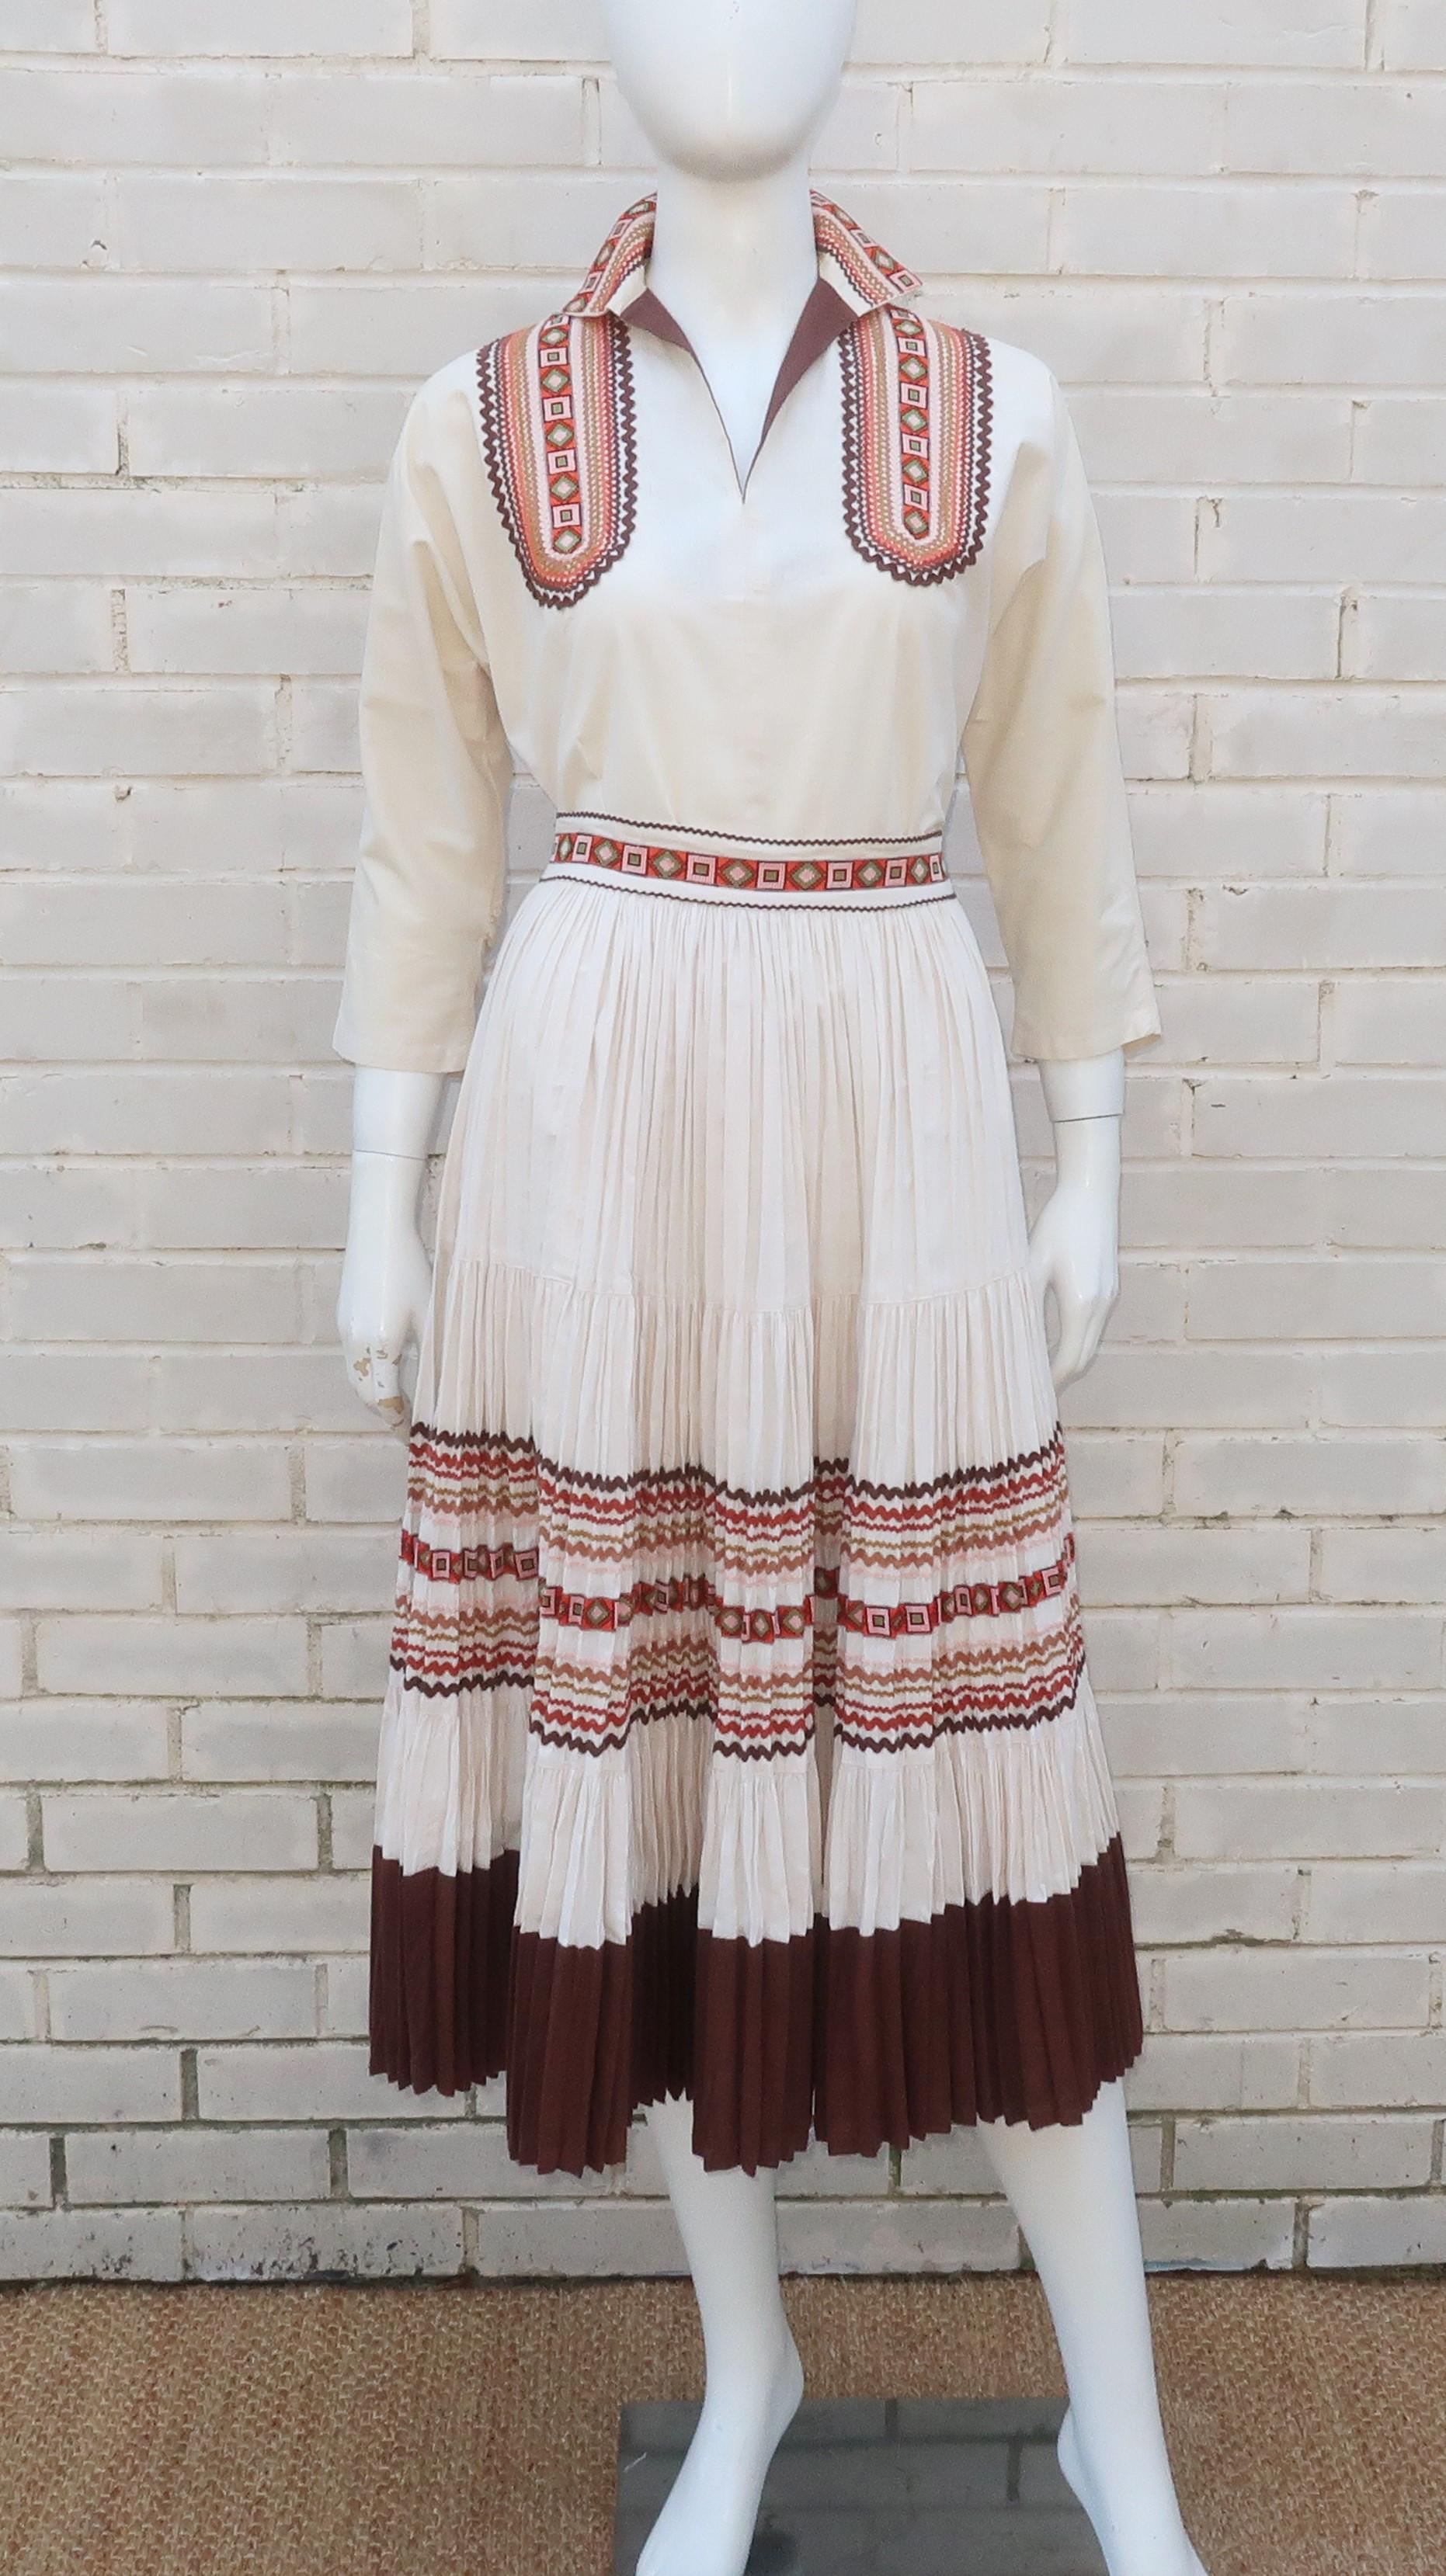 Patio-Kleider kamen in den 1940er bis 1950er Jahren in Mode und verbanden indianische Motive mit dem legeren Stil eines Tageskleides für einen ausgeprägten Western-Style.  Die prominenten Designer dieses Looks stammten aus Arizona und vermarkteten